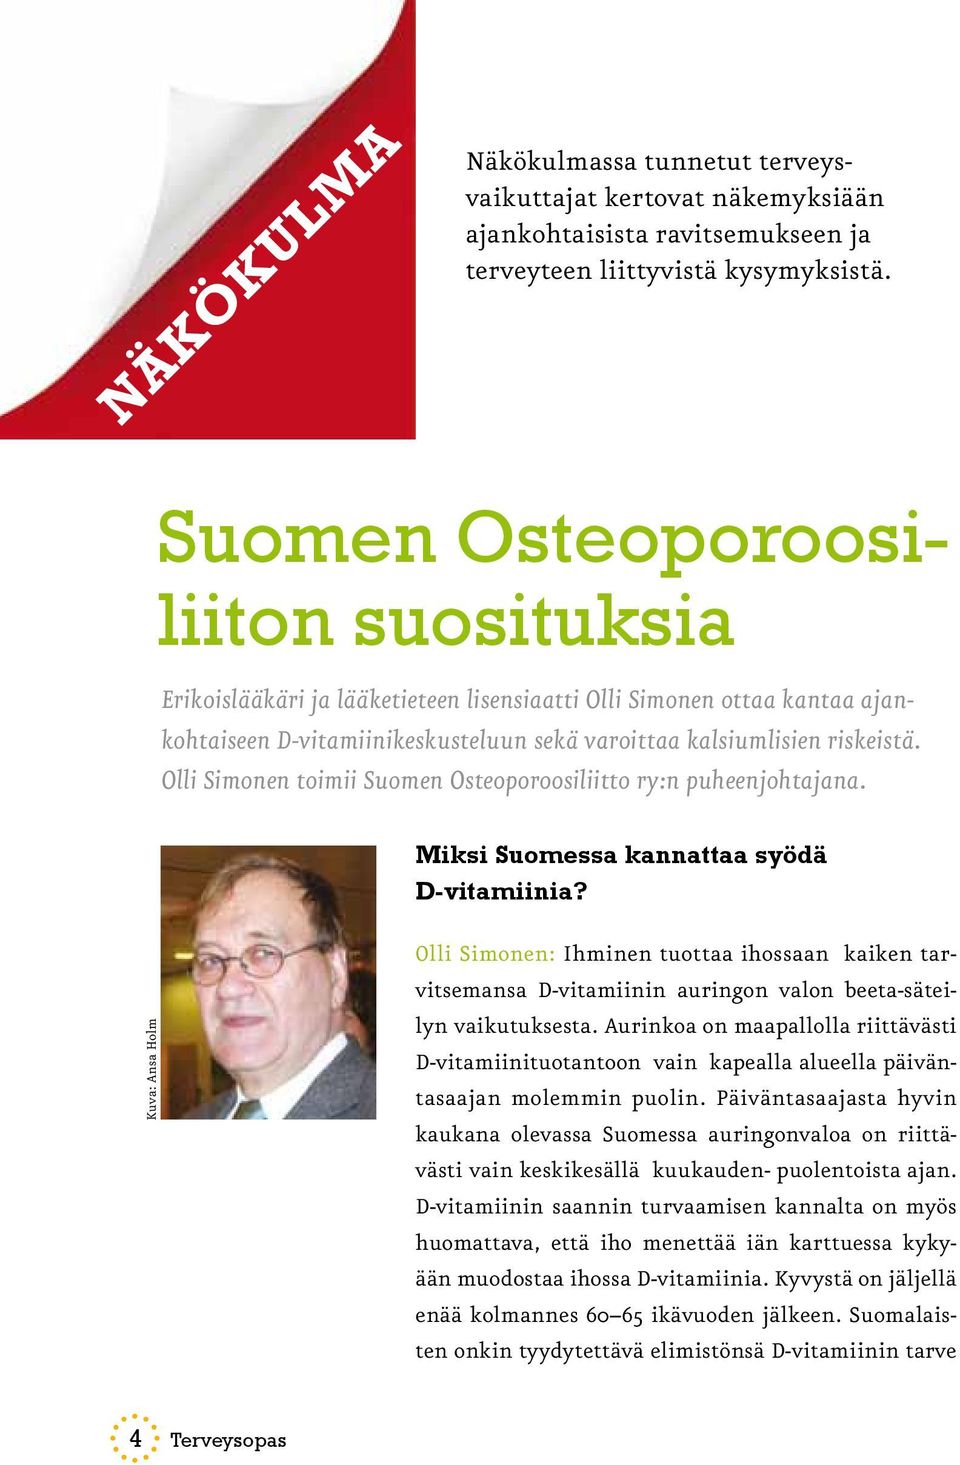 Olli Simonen toimii Suomen Osteoporoosiliitto ry:n puheenjohtajana. Miksi Suomessa kannattaa syödä D-vitamiinia?